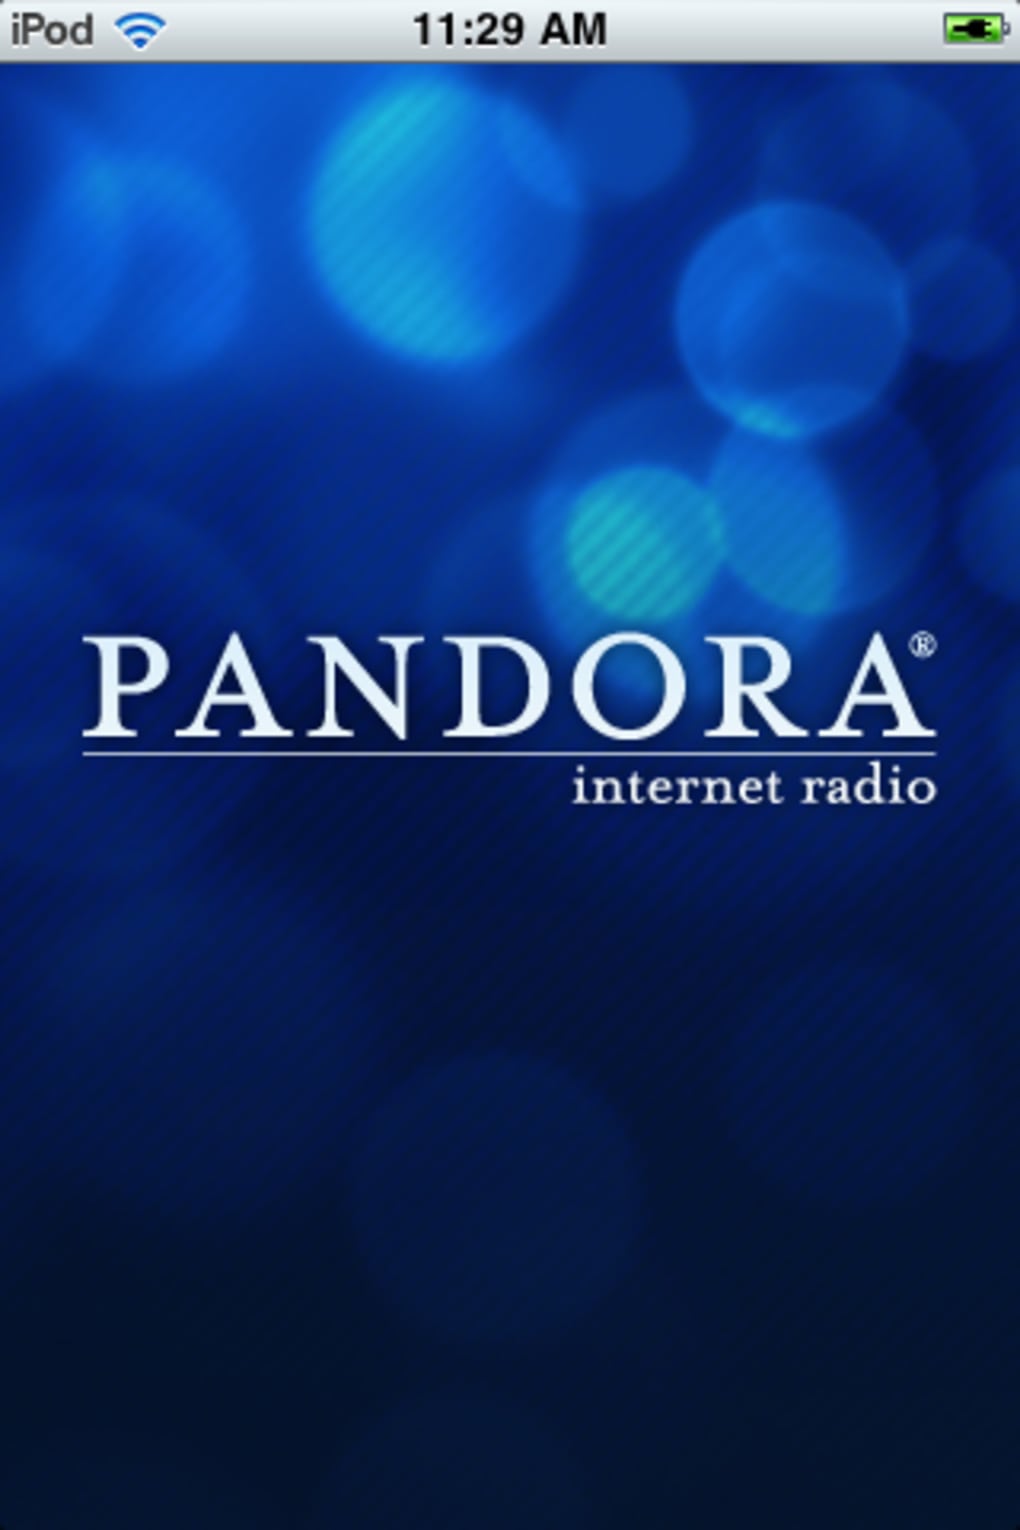 pandora music download free